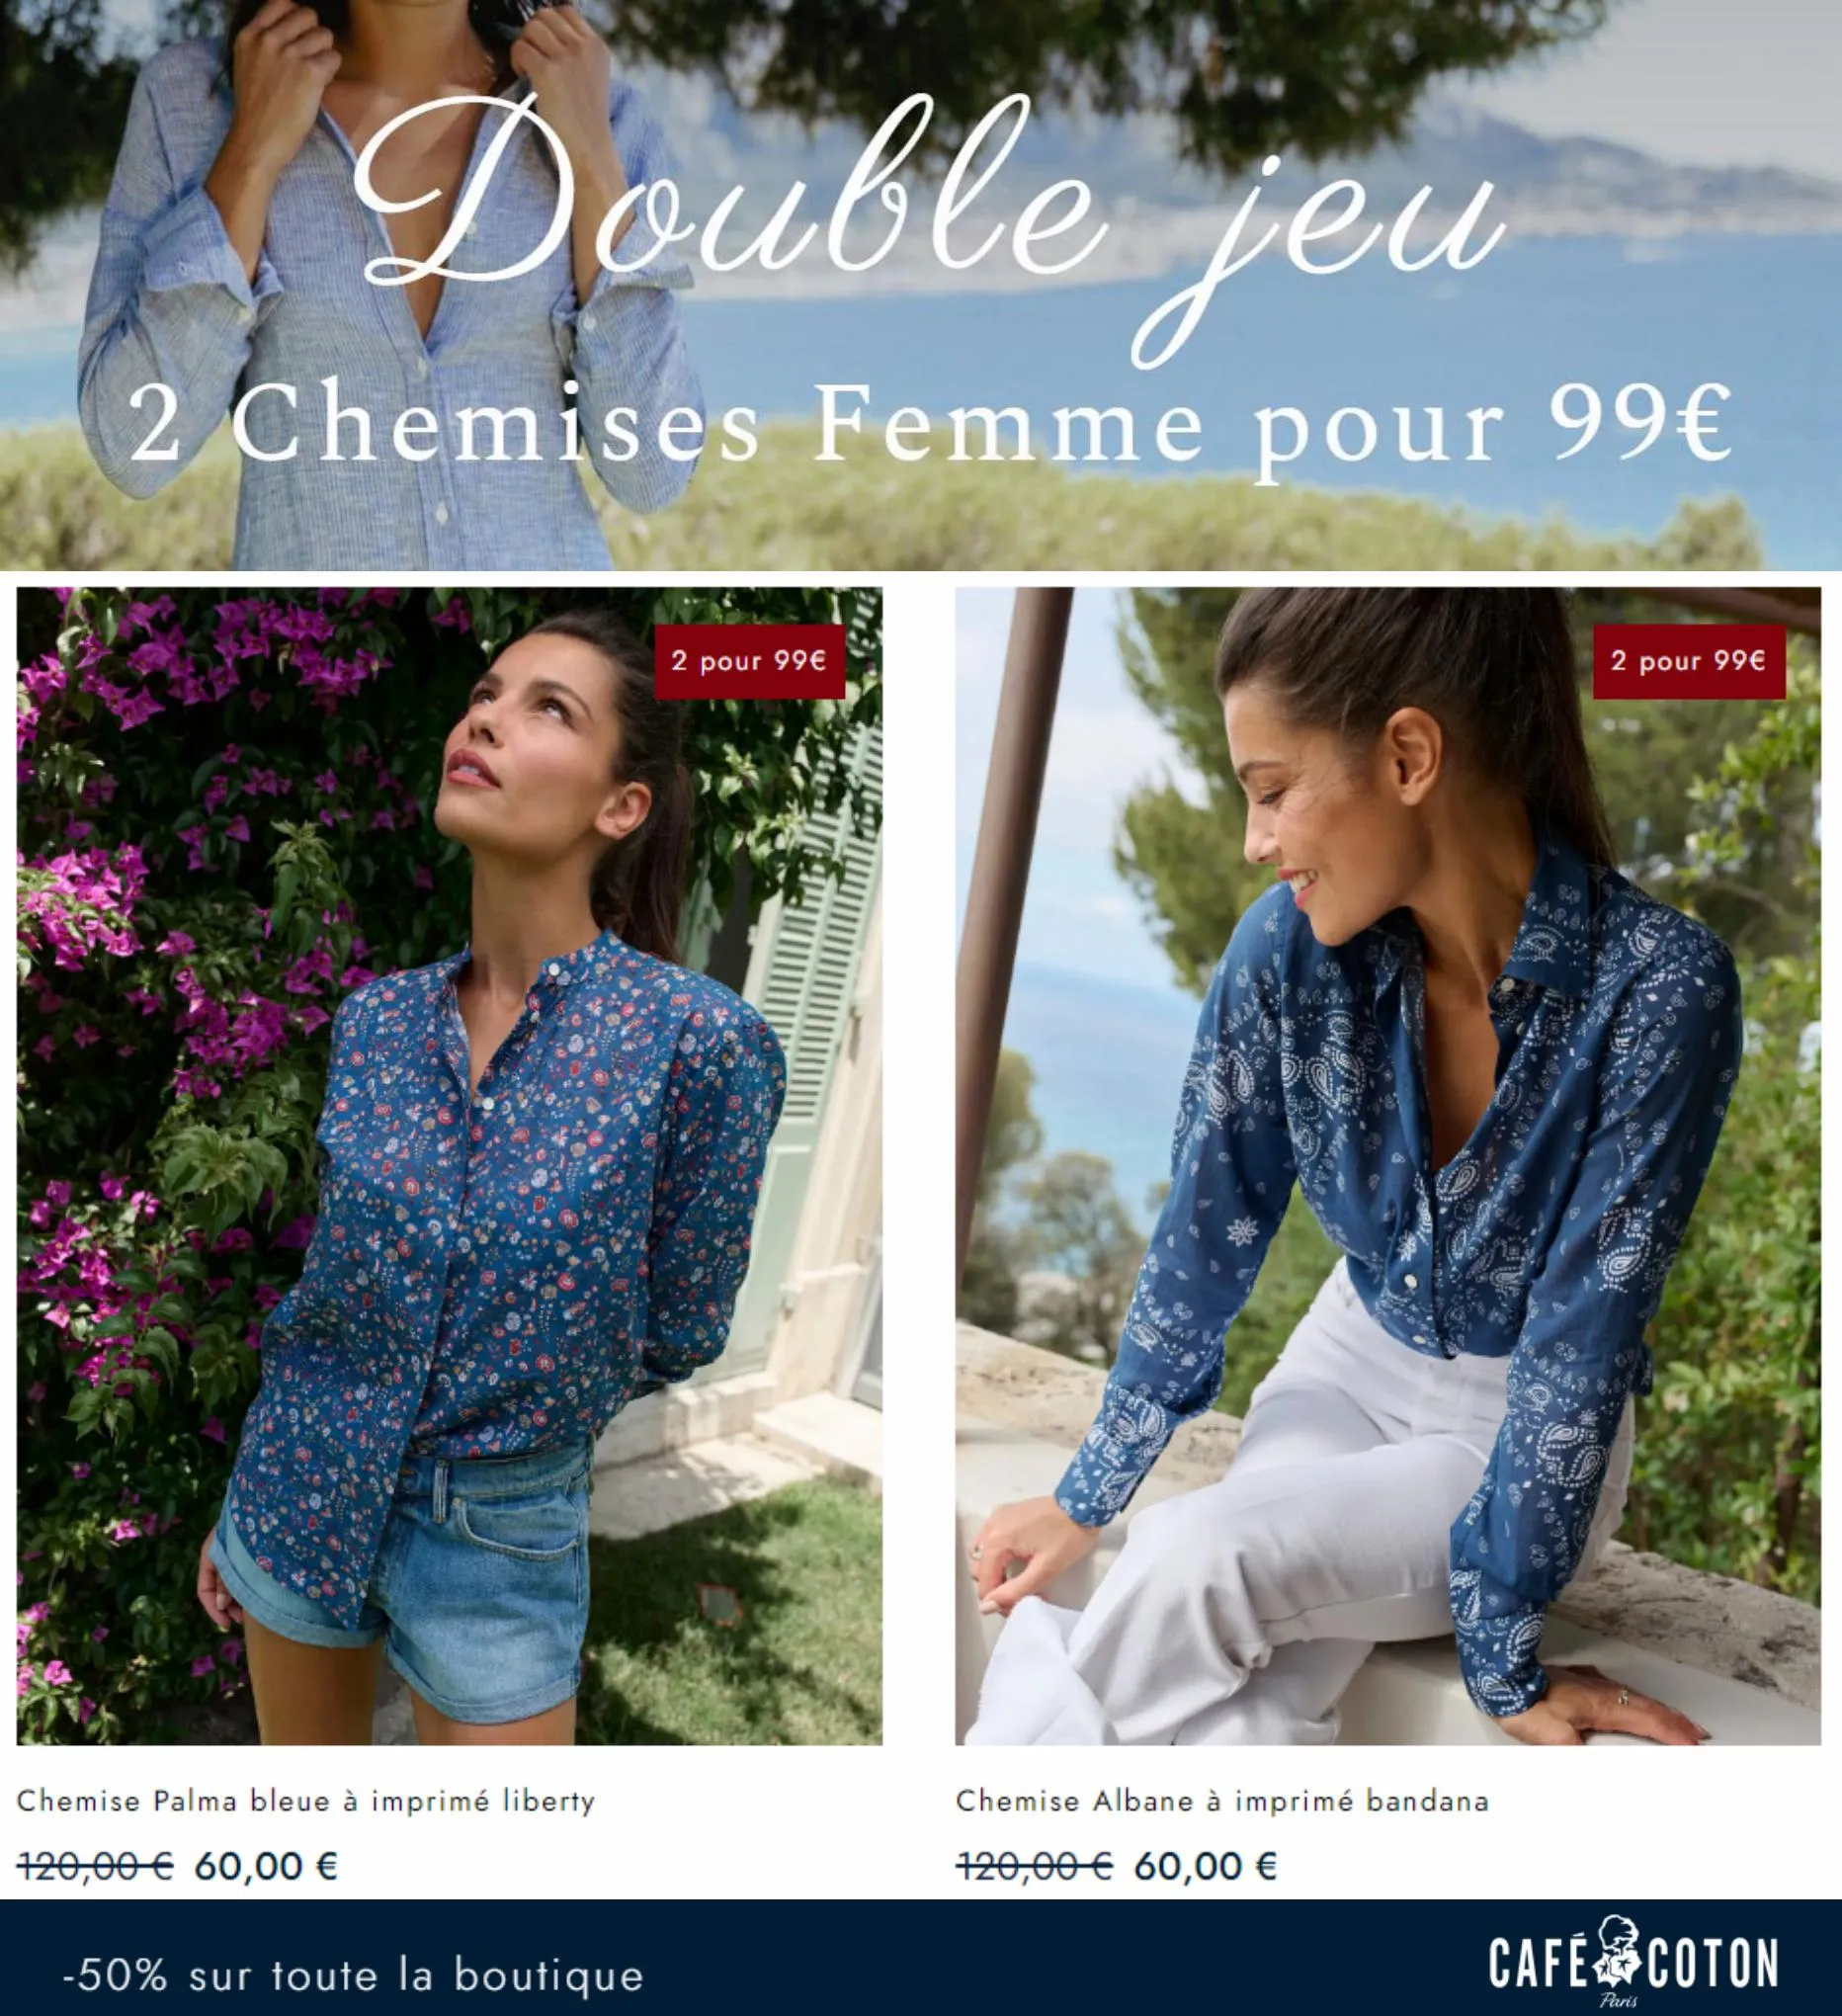 Catalogue 2 Chemises Femme pour 99, page 00009